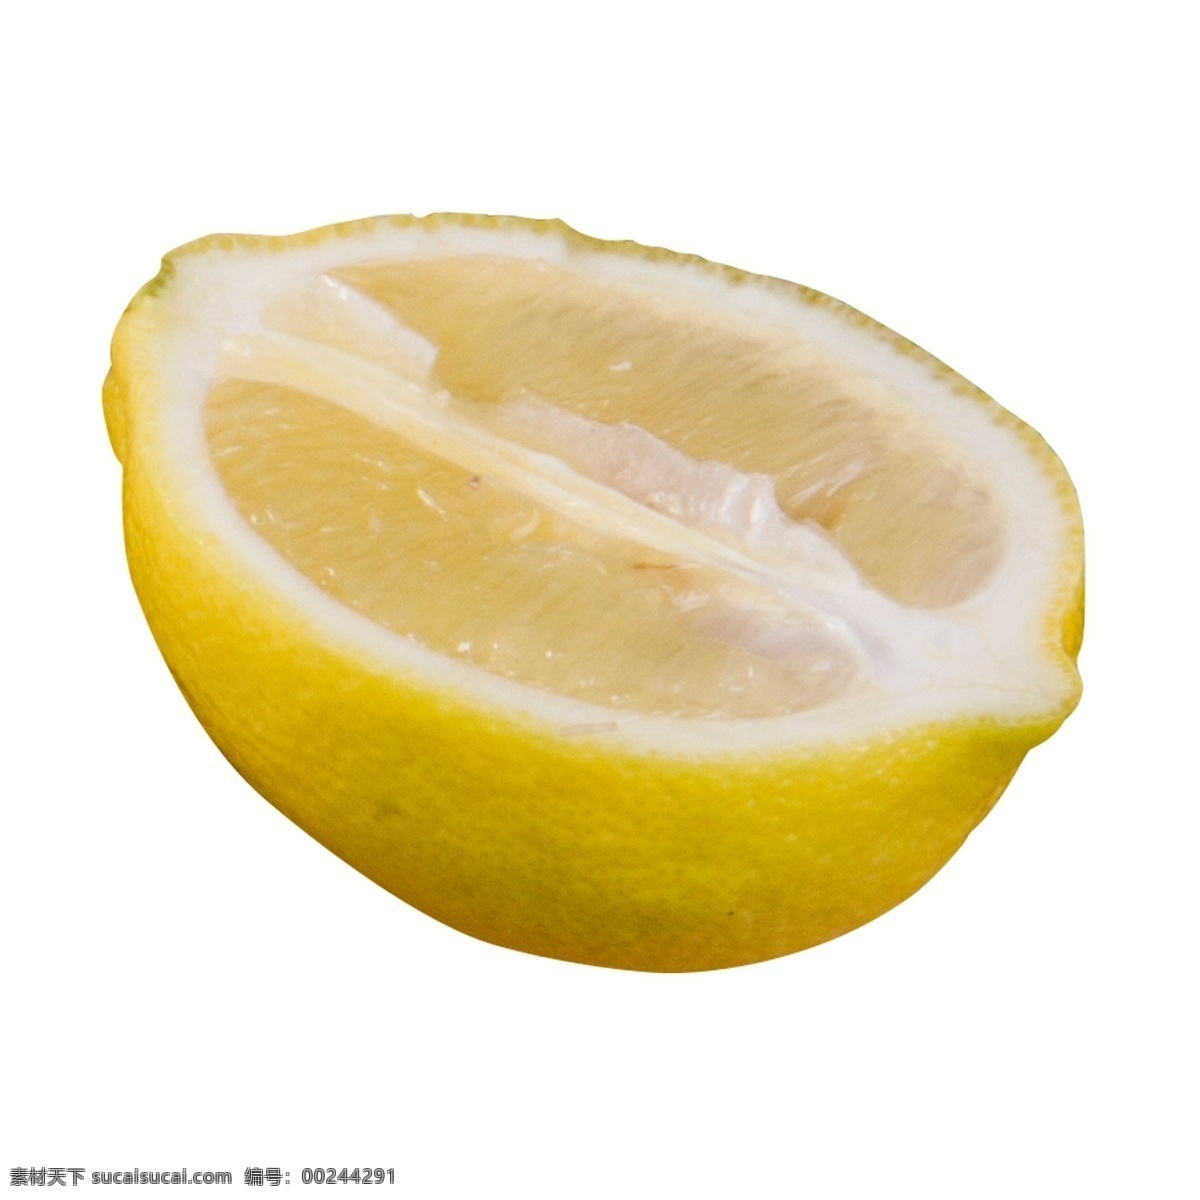 黄色 圆弧 柠檬 食物 元素 水果 吃的 烹饪 美食 味道 光泽 半圆 圆润 切开 酸酸的 质感